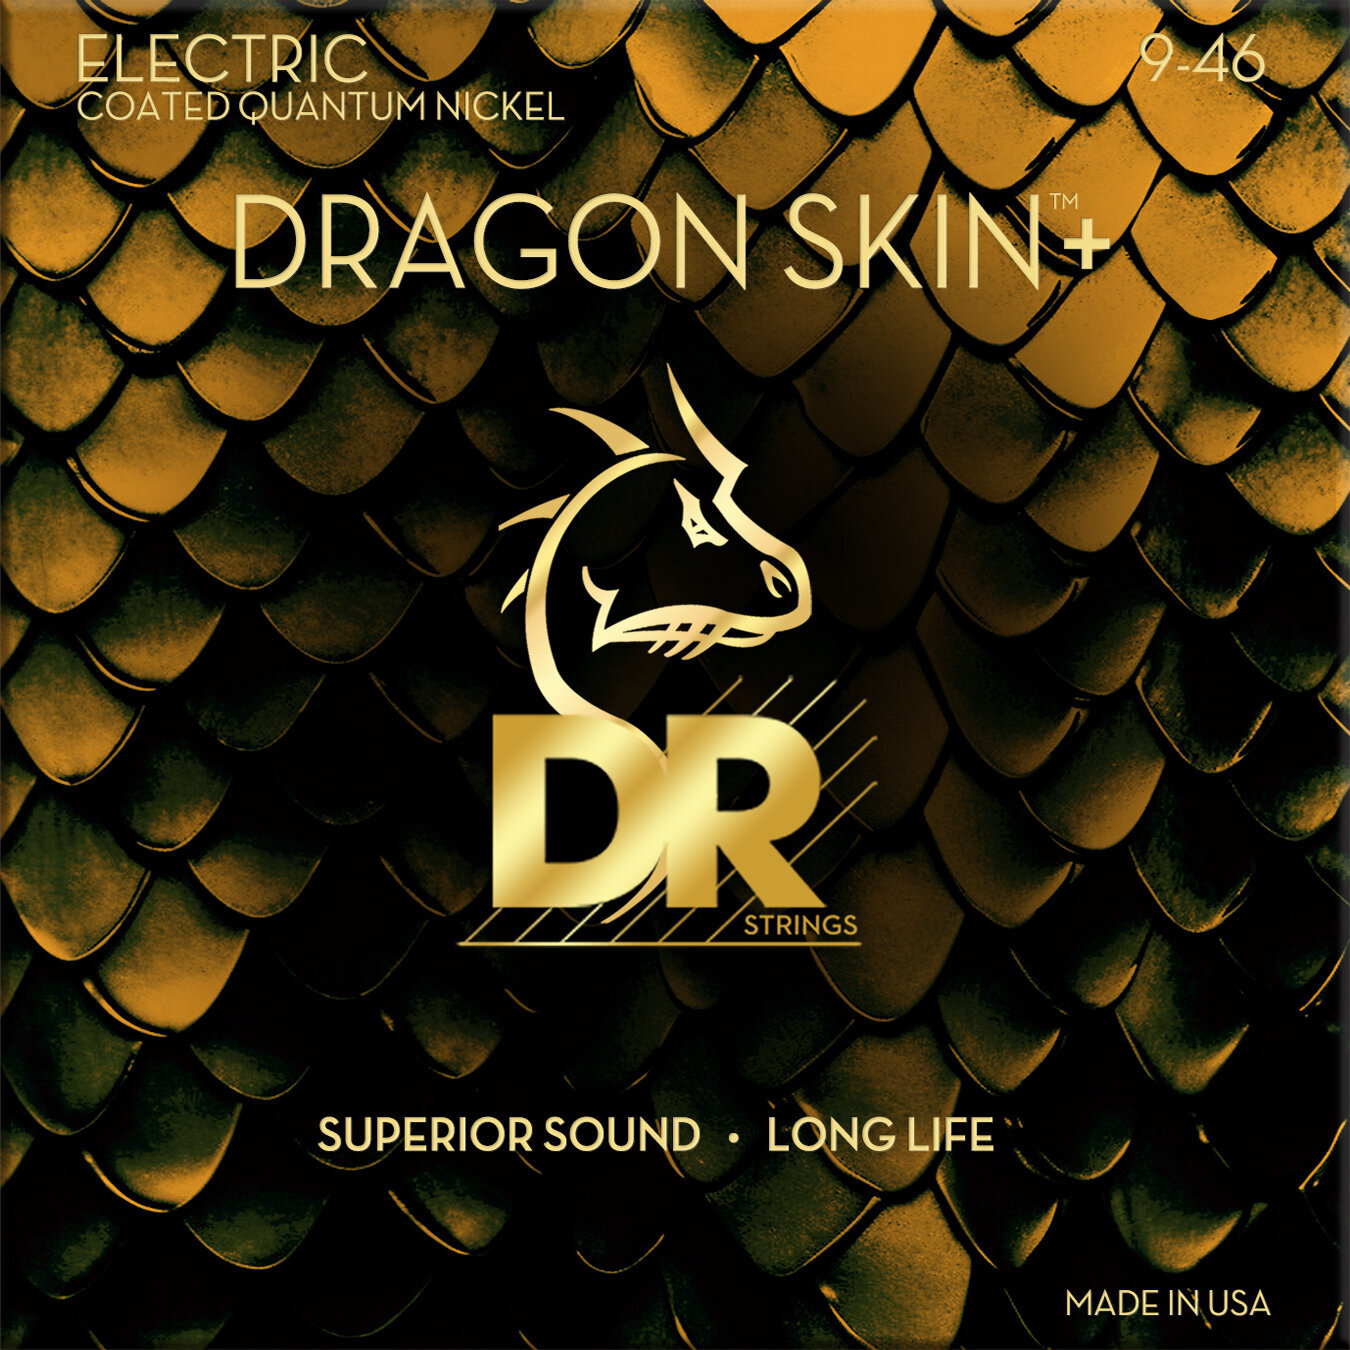 E-guitar strings DR Strings Dragon Skin+ Coated Light to Medium 9-46